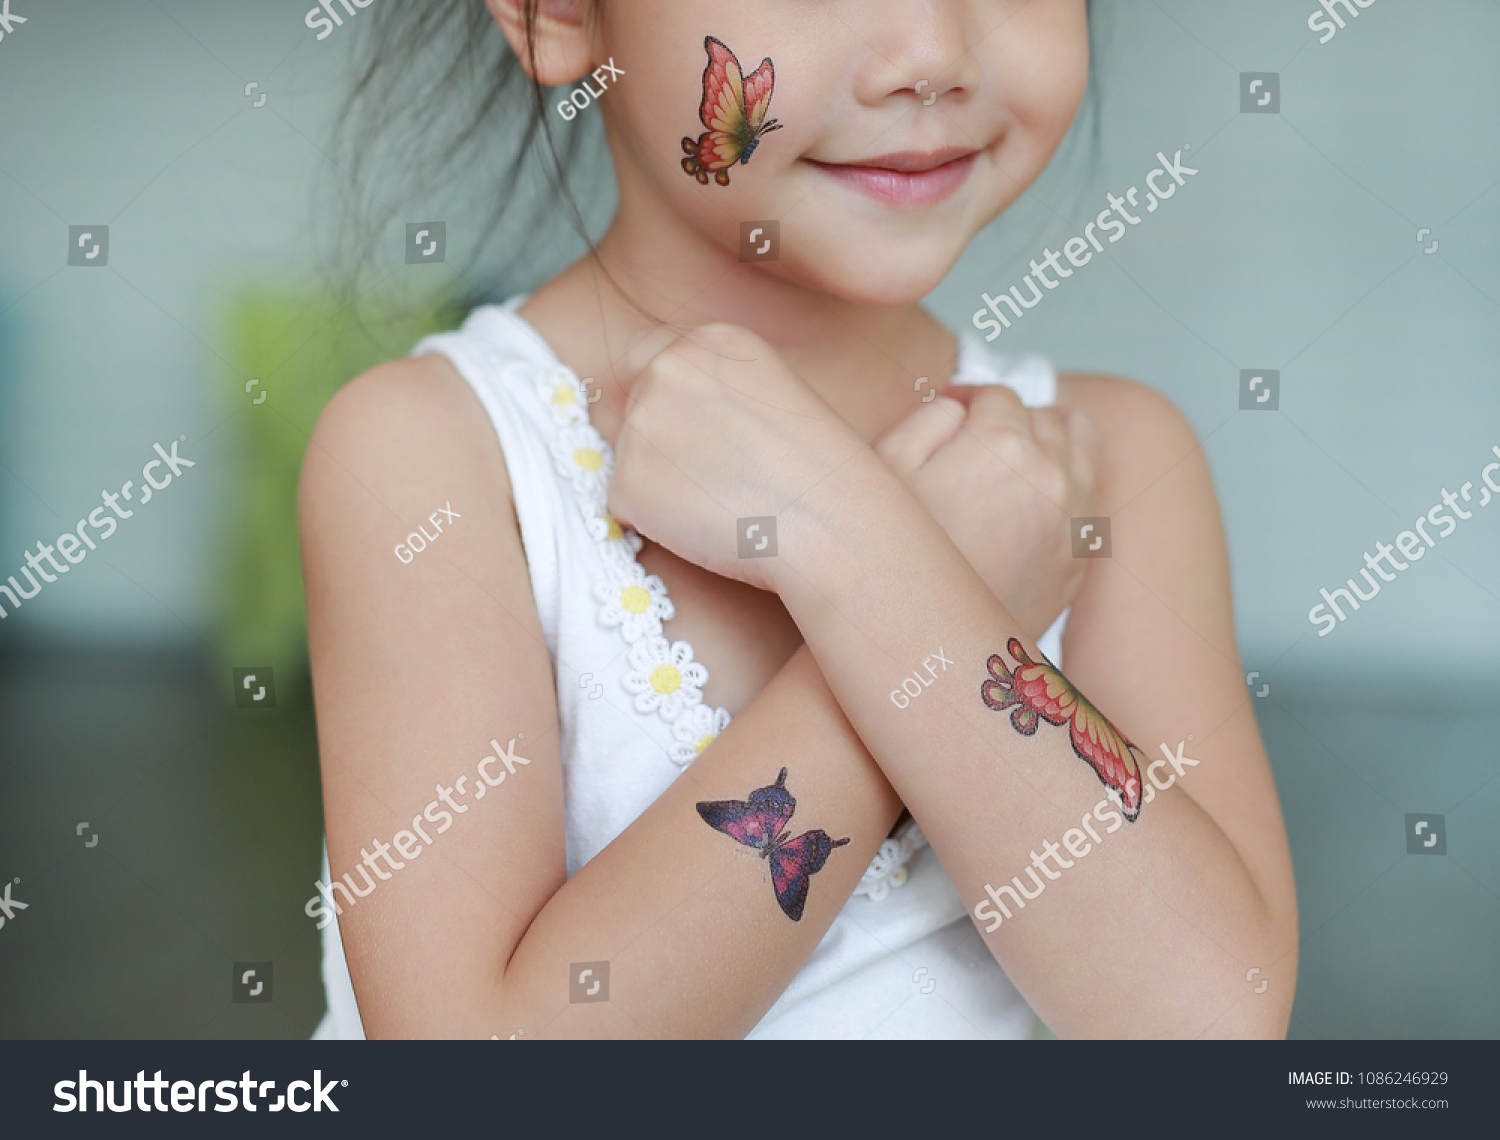 体の皮に蝶の刺青のステッカーを貼った小さな女の子の接写 タトゥーのドレスアップ の写真素材 今すぐ編集